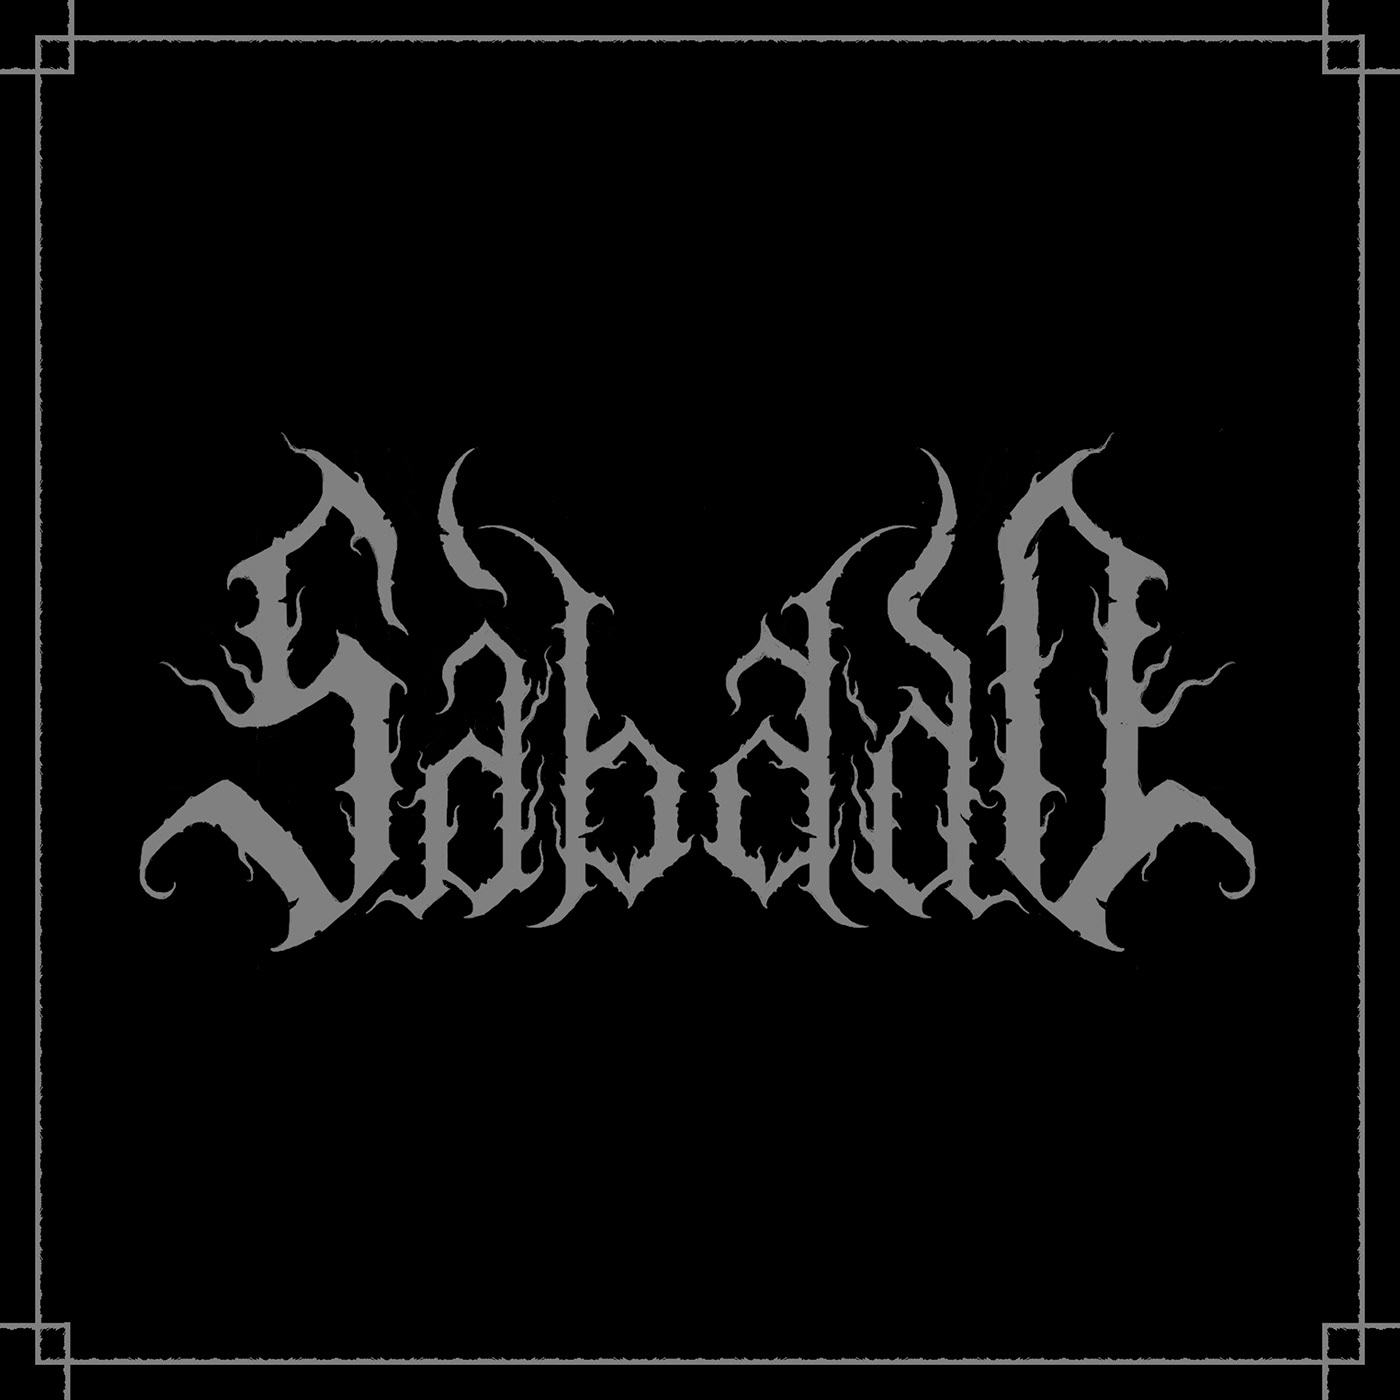 black metal black metal logo death metal death metal logo extreme metal logo gothic metal logo metal metal logo metal logos